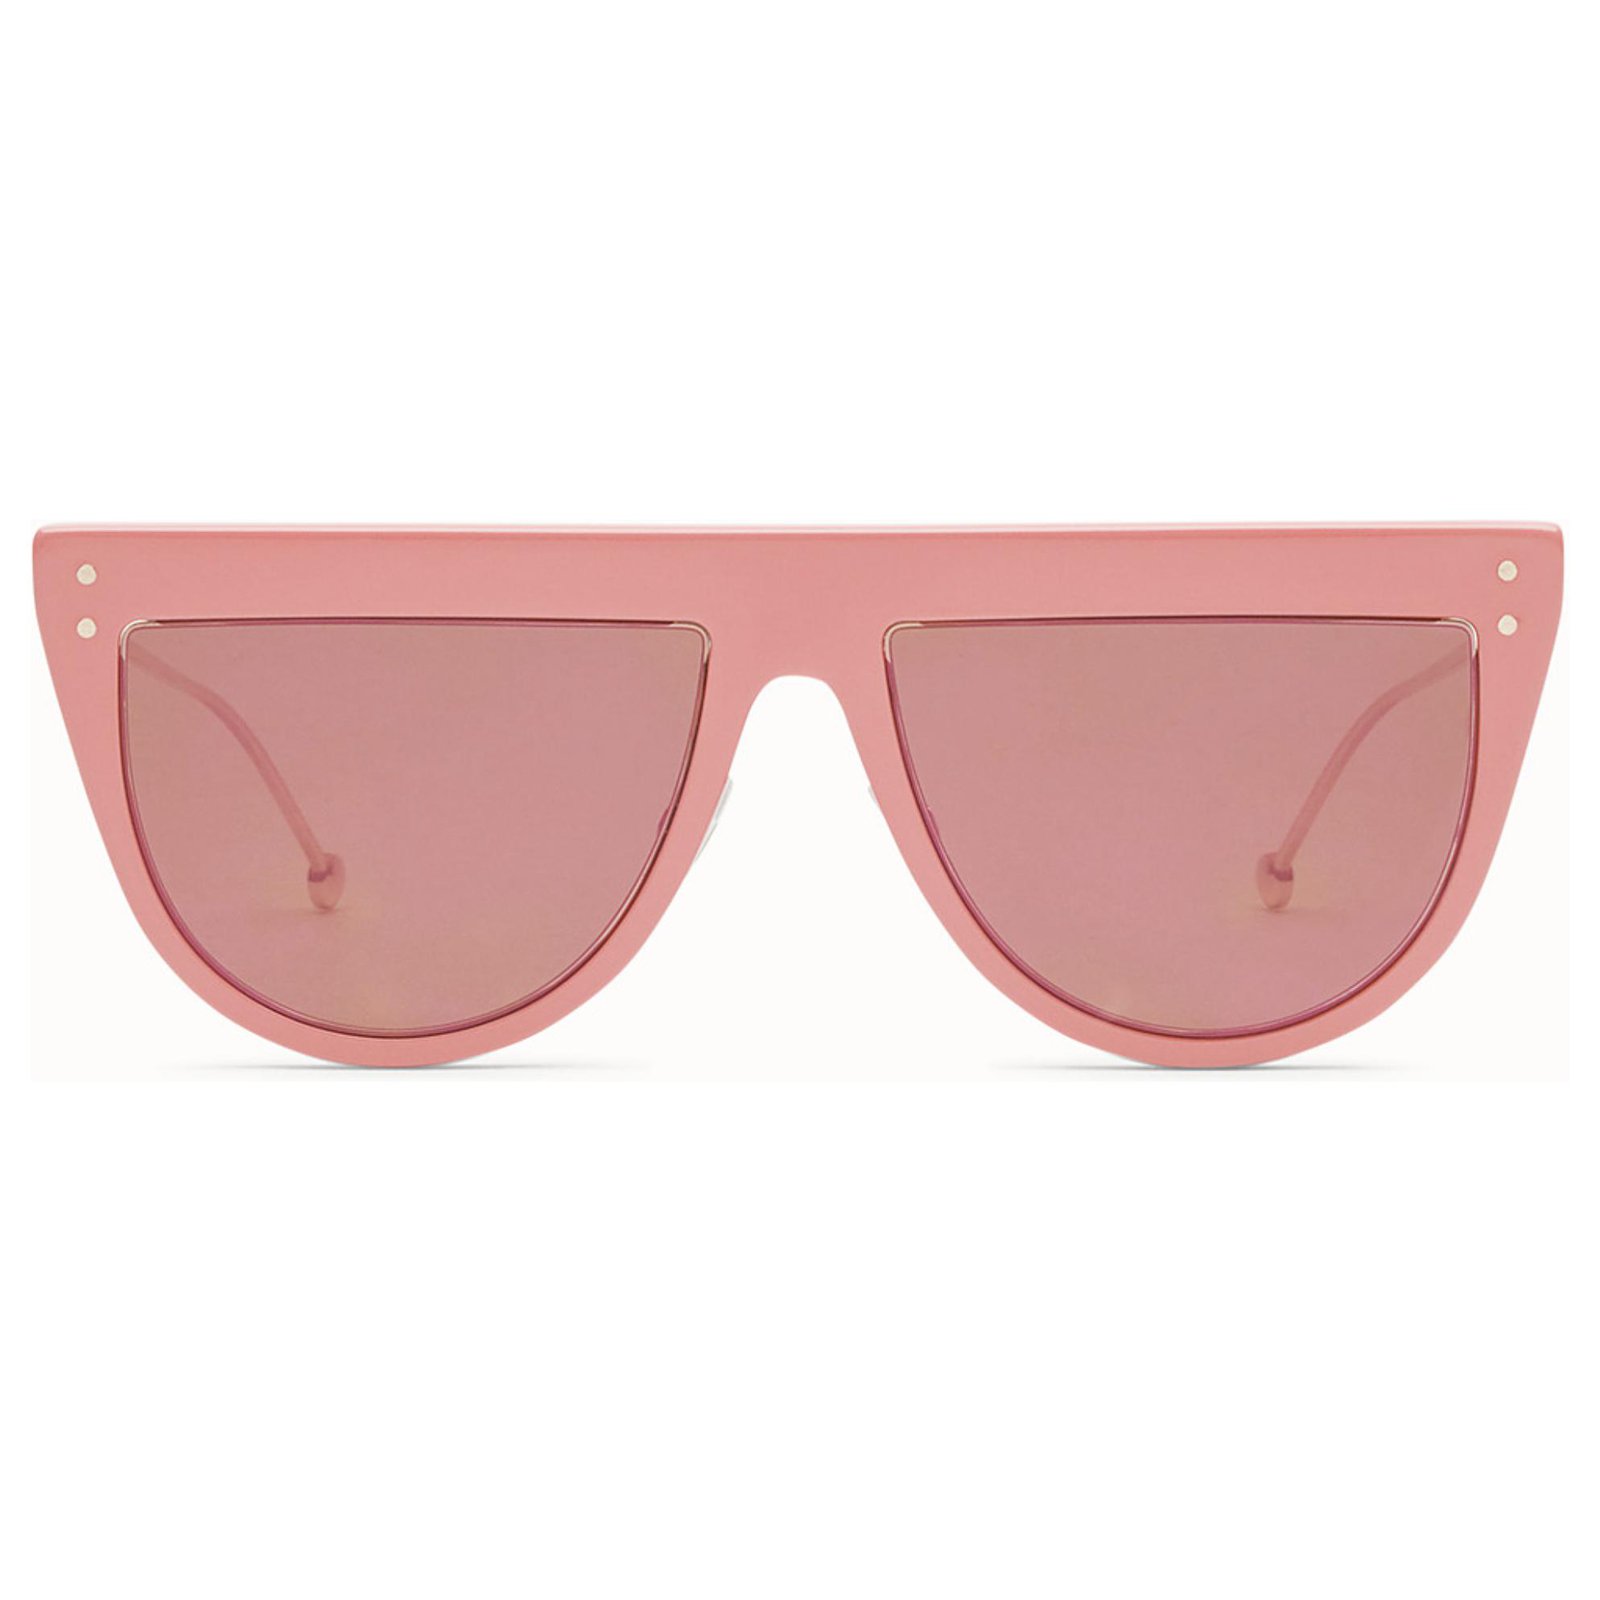 fendi sunglasses 2019 price